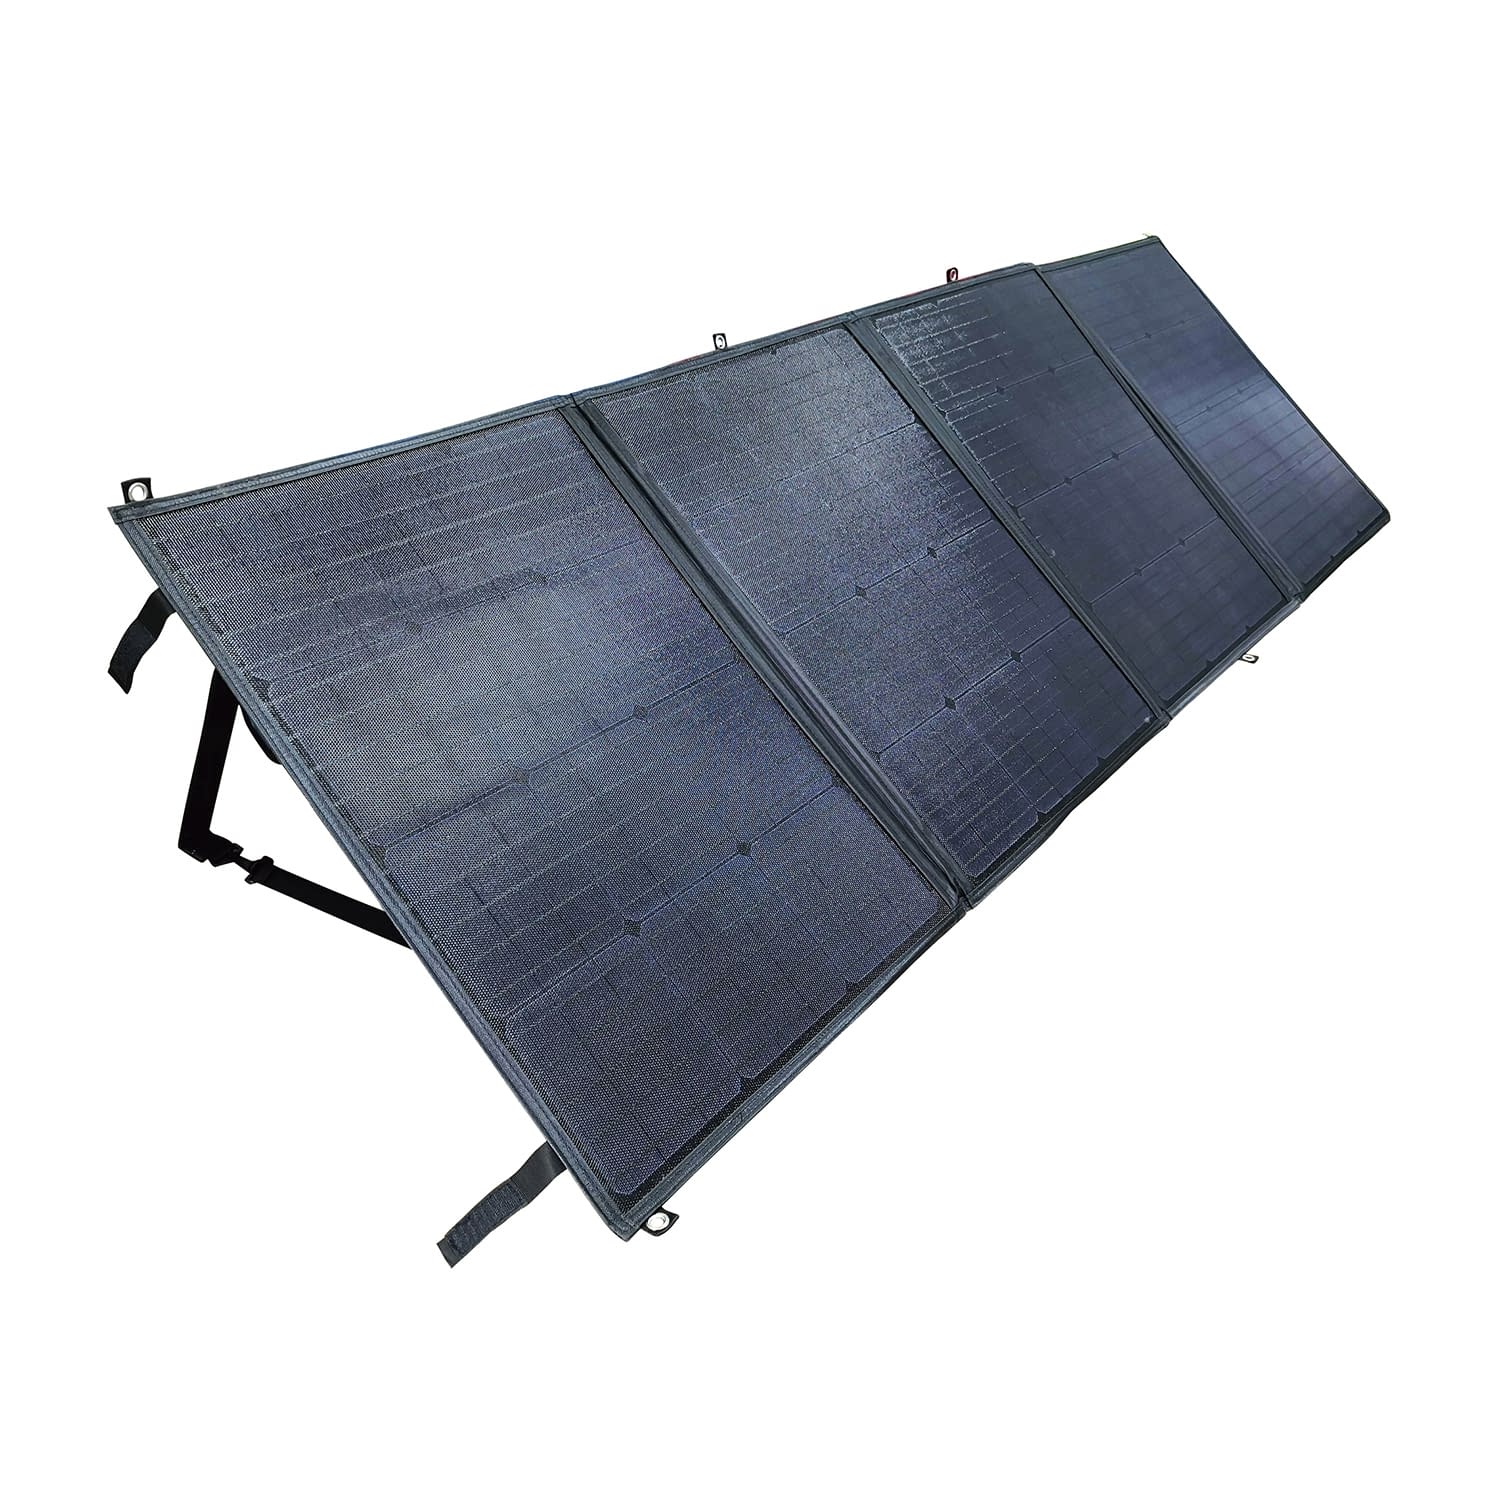 ソーラーパネル MUP-200F 蓄電池 25-2519-10(MUP-200F)(25-2519-10)